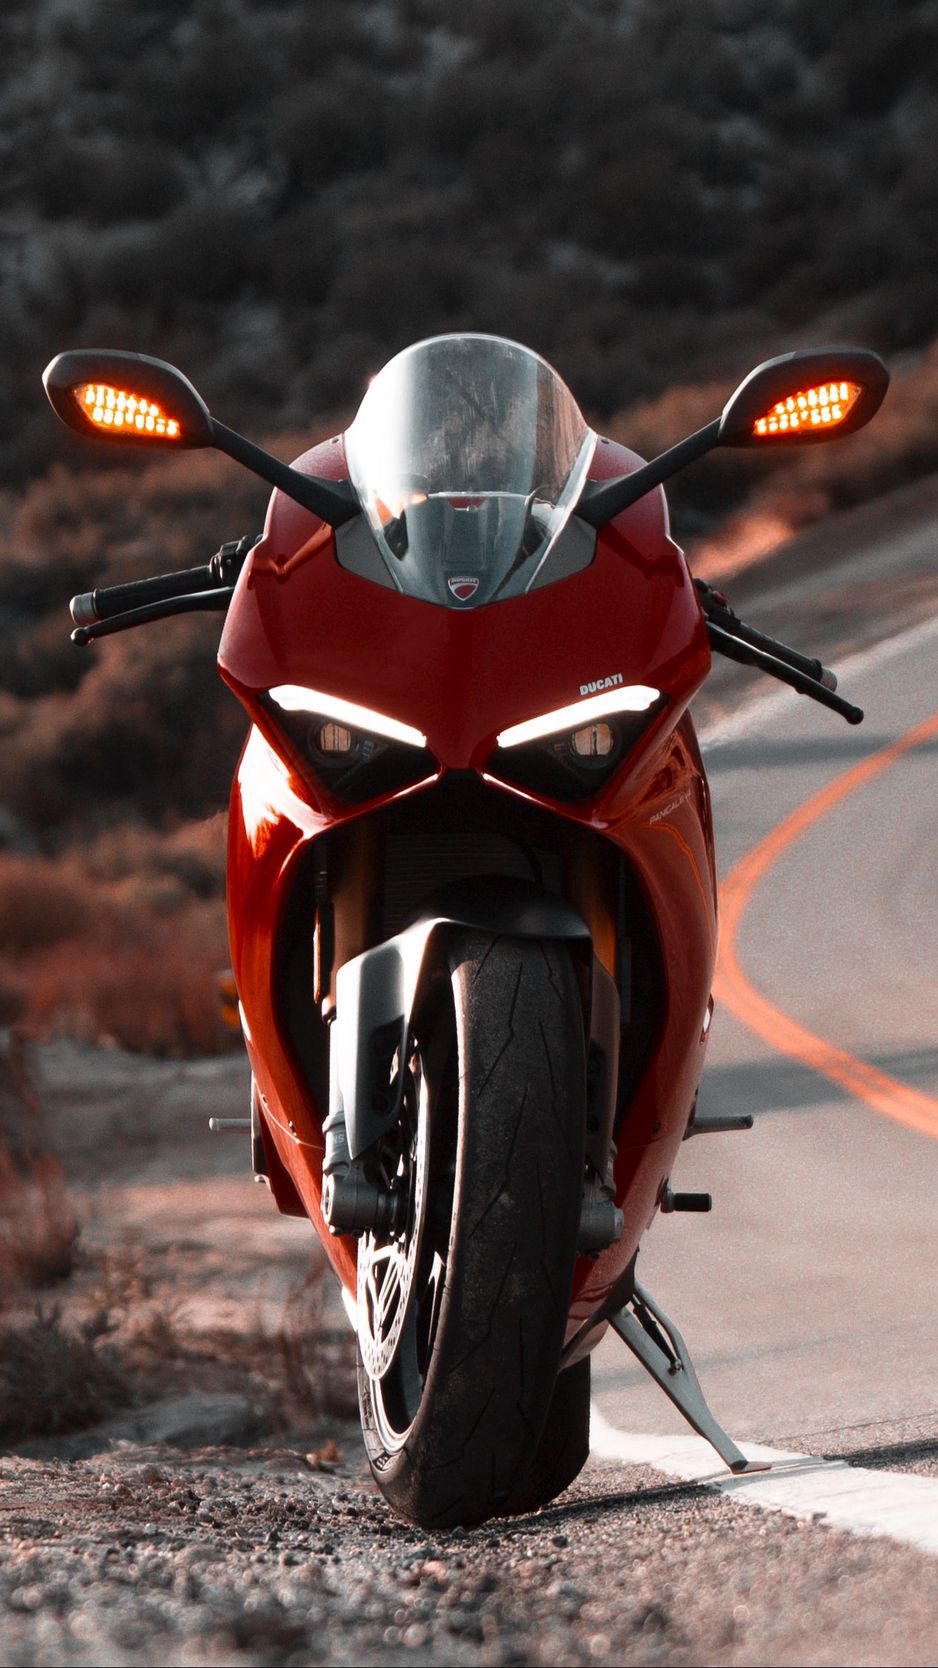 Red Ducati Bike Wallpaper Download  MobCup